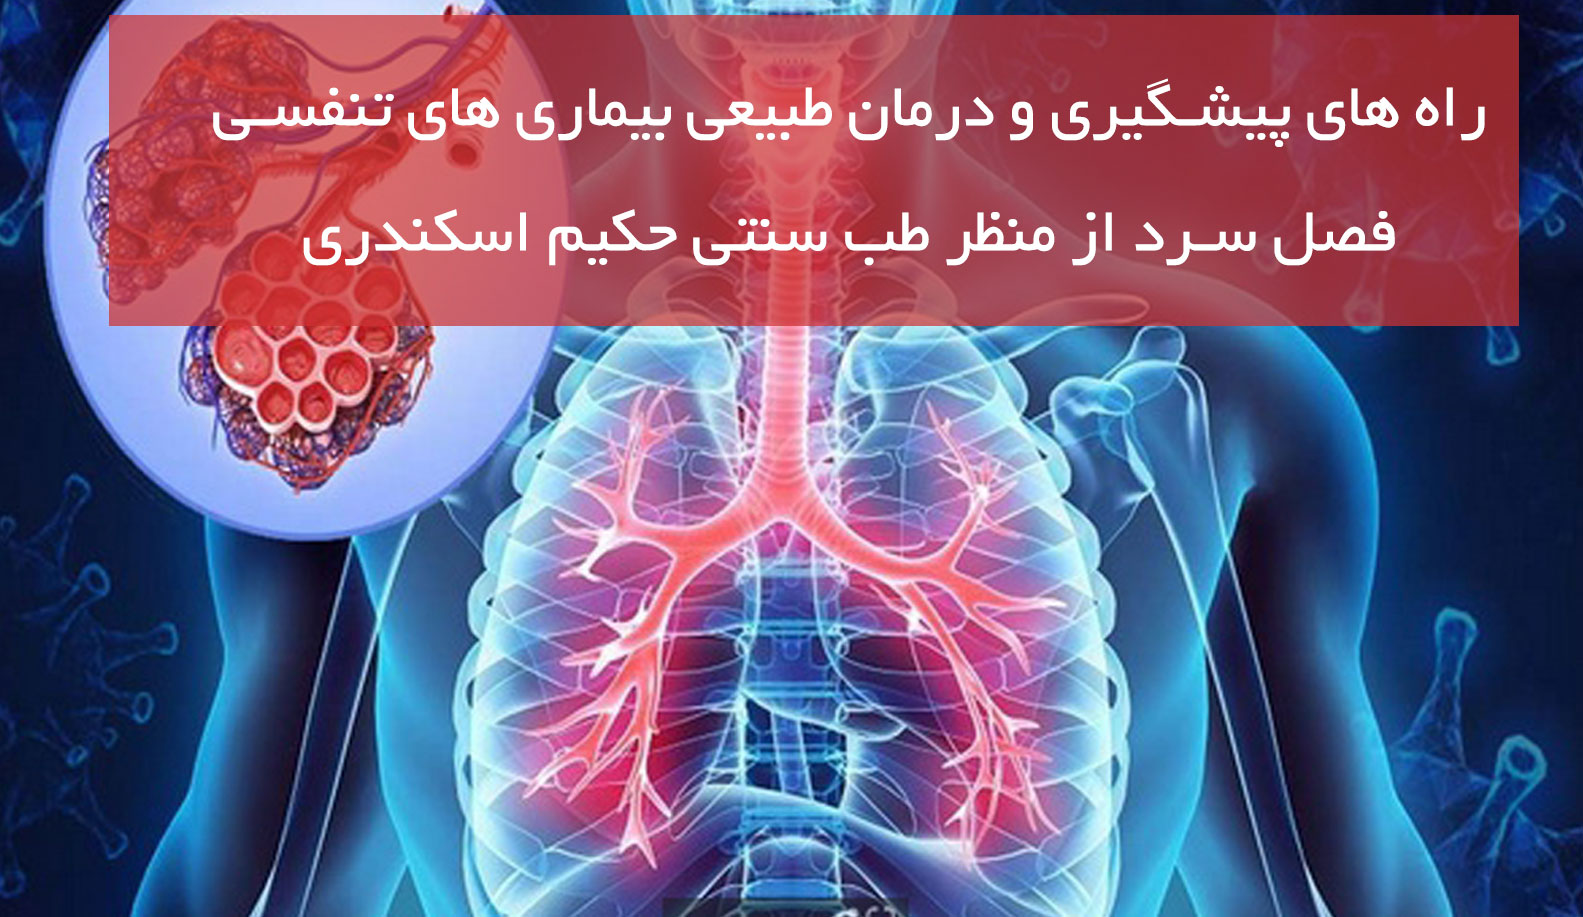 راه های پیشگیری و درمان طبیعی بیماری های تنفسی فصل سرد از منظر طب سنتی حکیم اسکندری